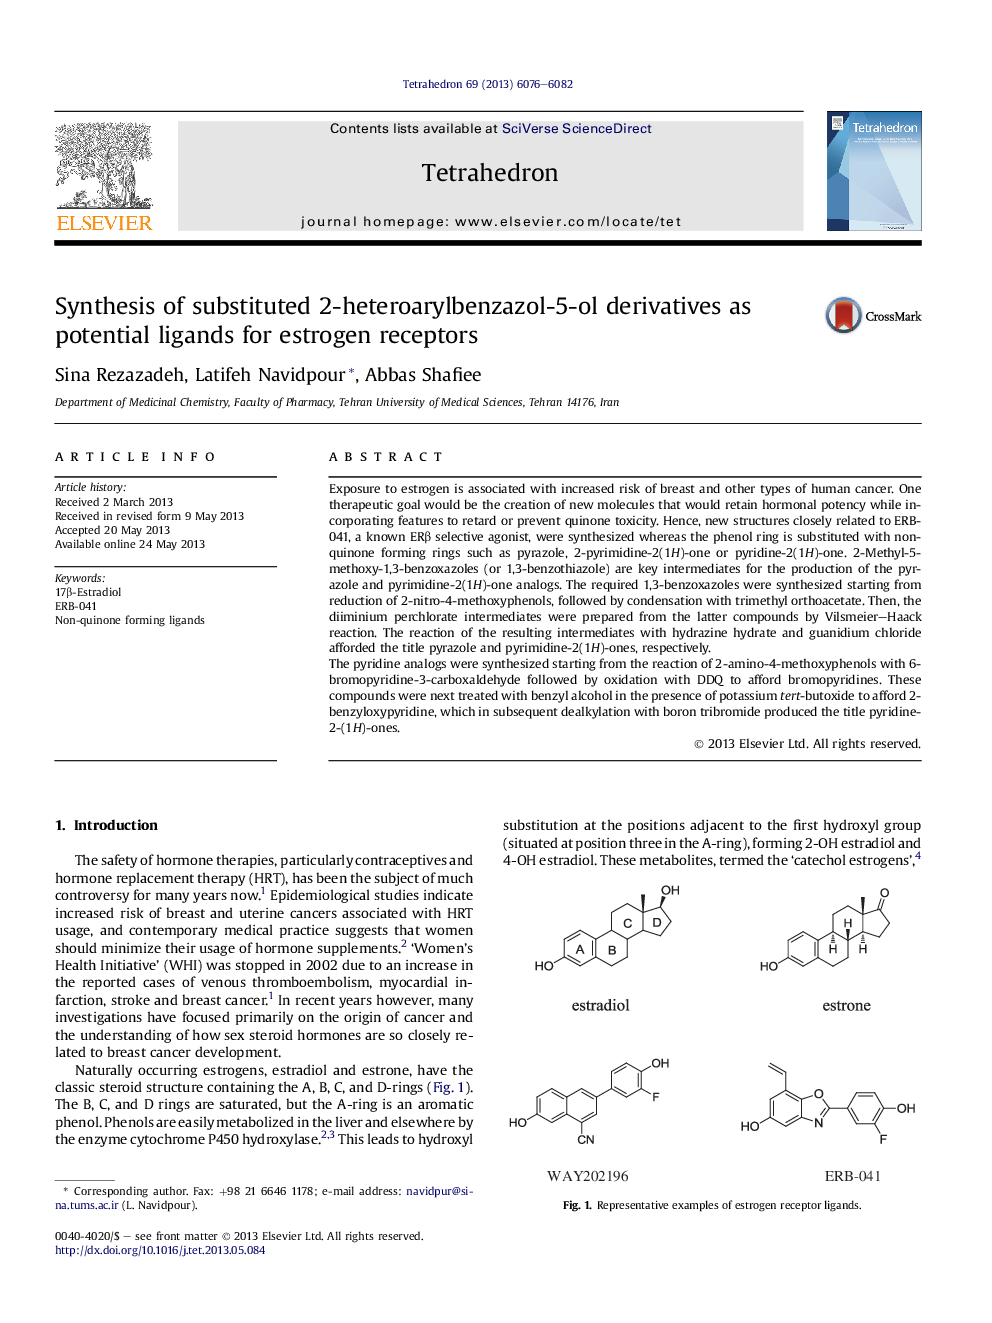 سنتز مشتقات مضاعف 2-هتروآرییل بنزول-5-اول به عنوان لیگاندهای بالقوه برای گیرنده های استروژن 